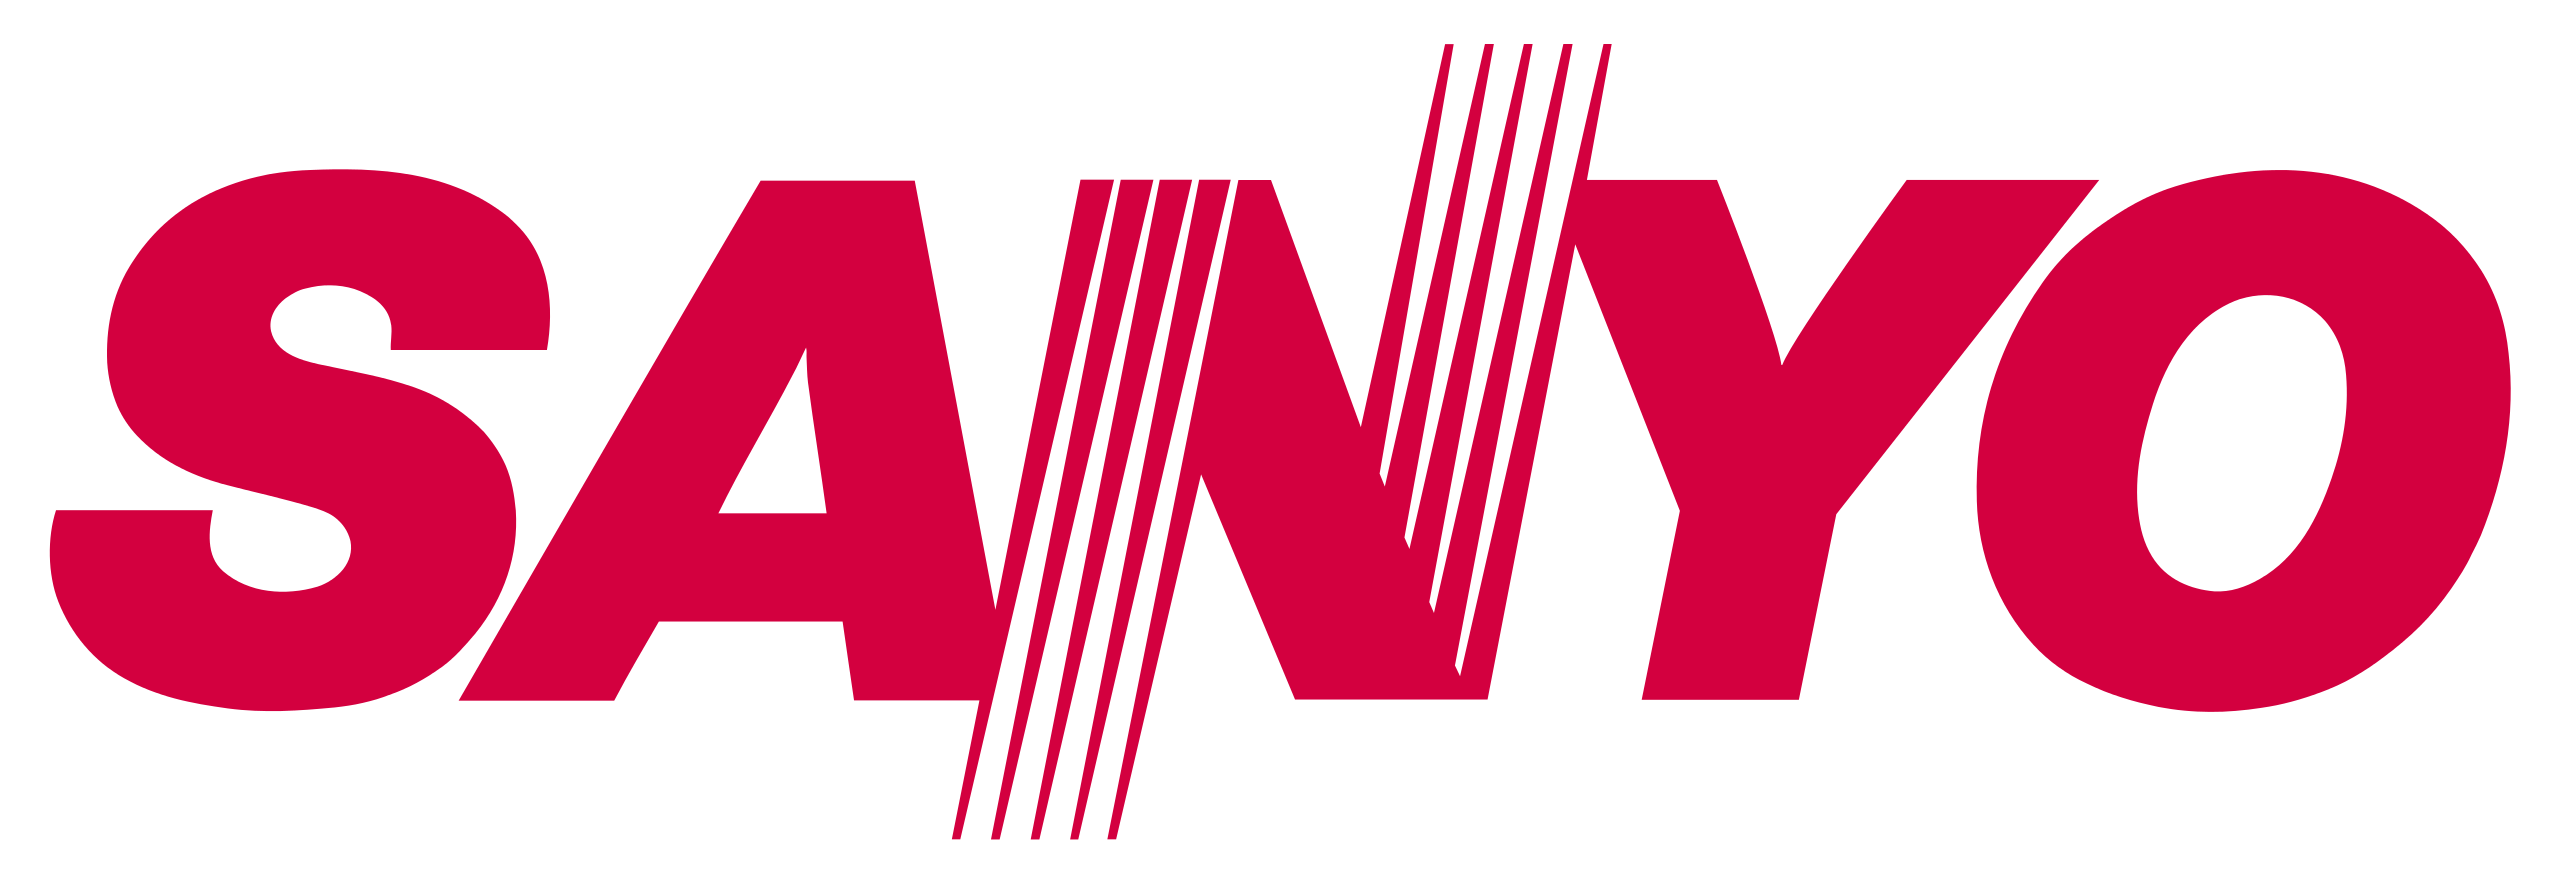 Sanyo_logo.svg